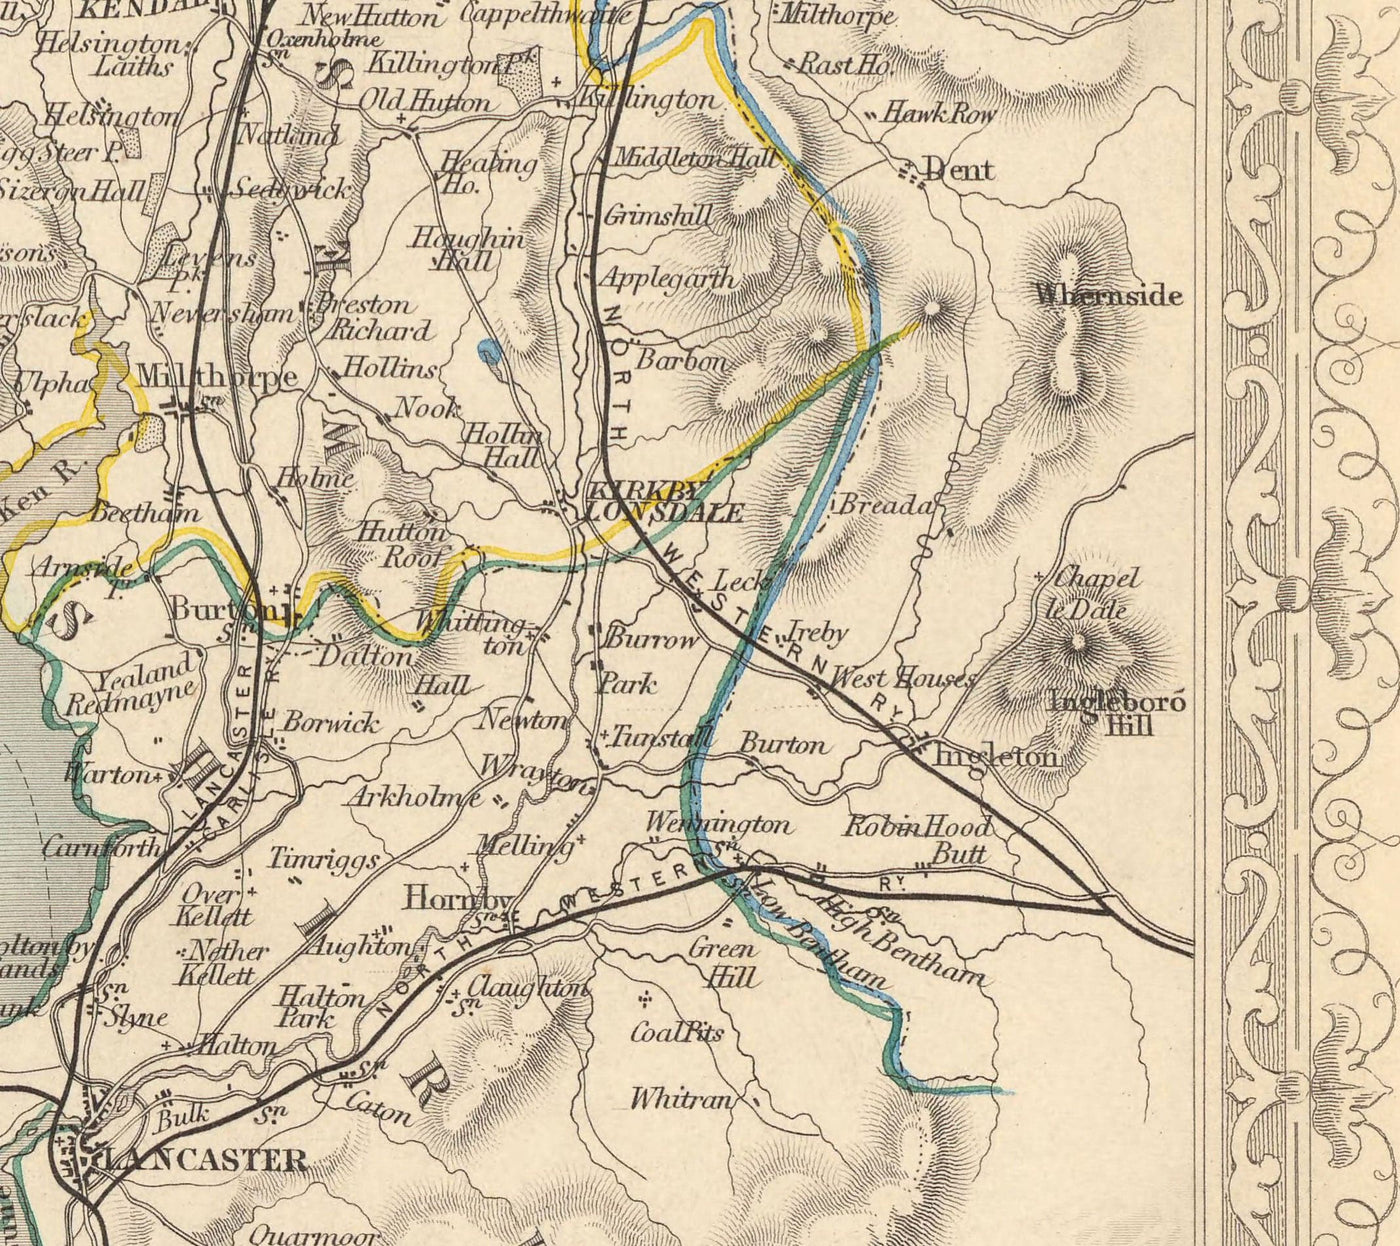 Alte Karte von Lake District, 1851 von Tallis & Rapkin - Cumbria, Westmorland, Lancashire, Windermere, Lakeland